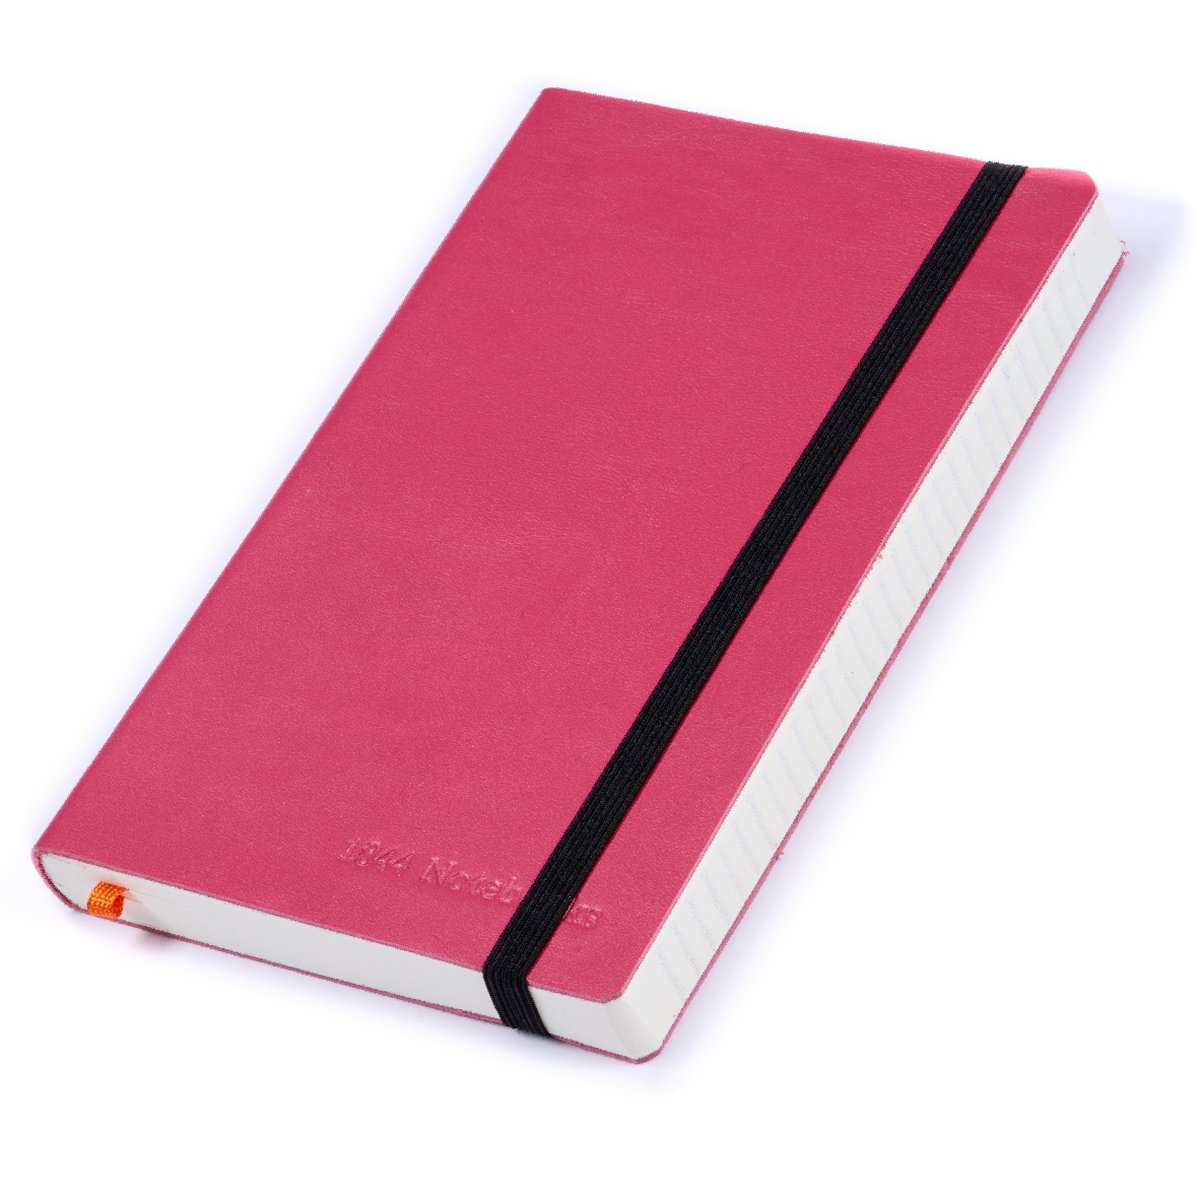 Notitieboek - Notebook A5 - Cadeau voor man - Cadeau voor vrouw - Notitieboekje - Handgemaakt van leer - Notebook - Notitieblok - Innuendo Pink - roze - 1844 Notebooks